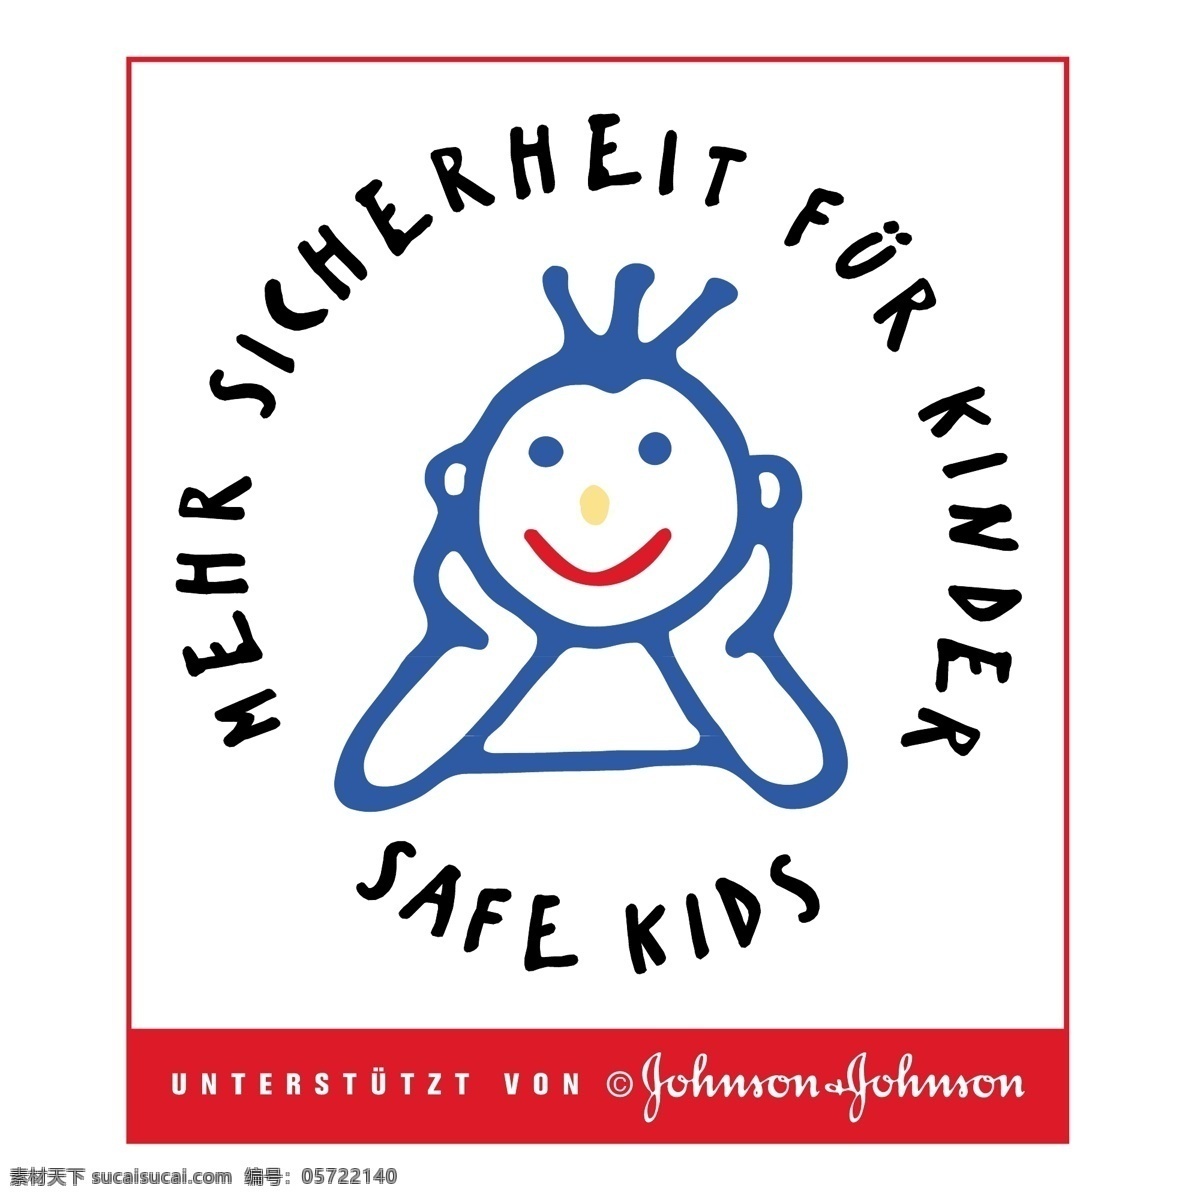 儿童安全 标识 公司 免费 品牌 品牌标识 商标 矢量标志下载 免费矢量标识 矢量 psd源文件 logo设计